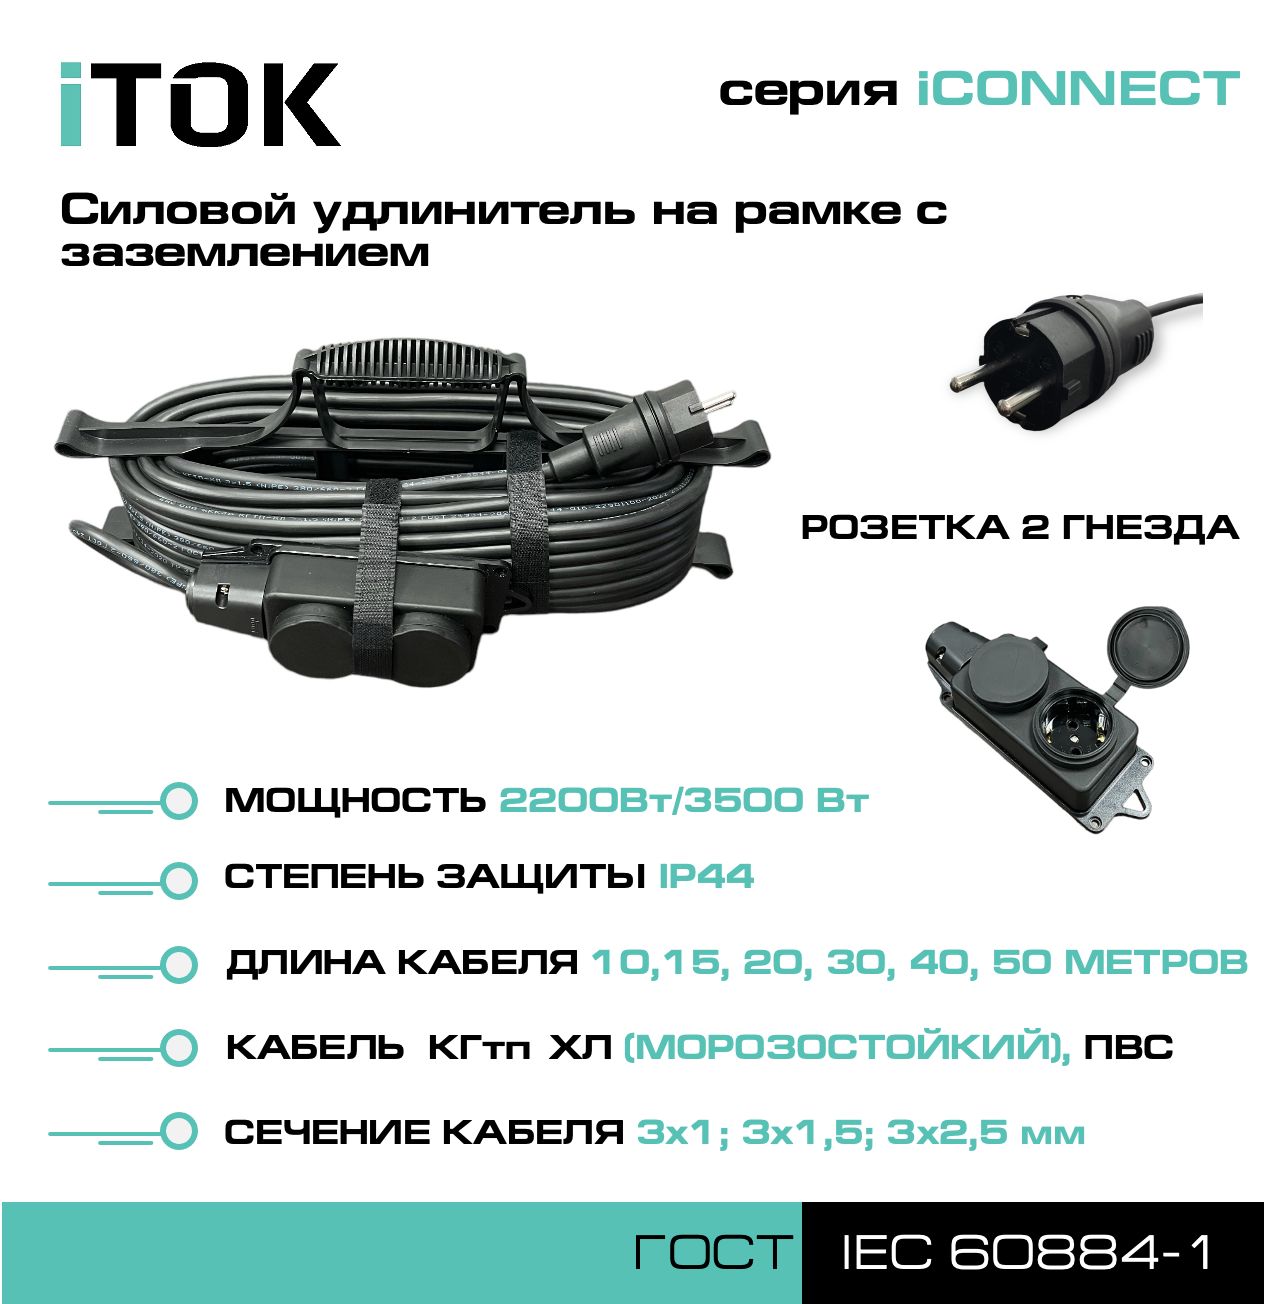 Удлинитель на рамке с заземлением серии iTOK iCONNECT КГтп-ХЛ 3х2,5 мм 2 гнезда IP44 15 м зарядные гнезда usb в виде клавиши marina 3 1 а more 10264236